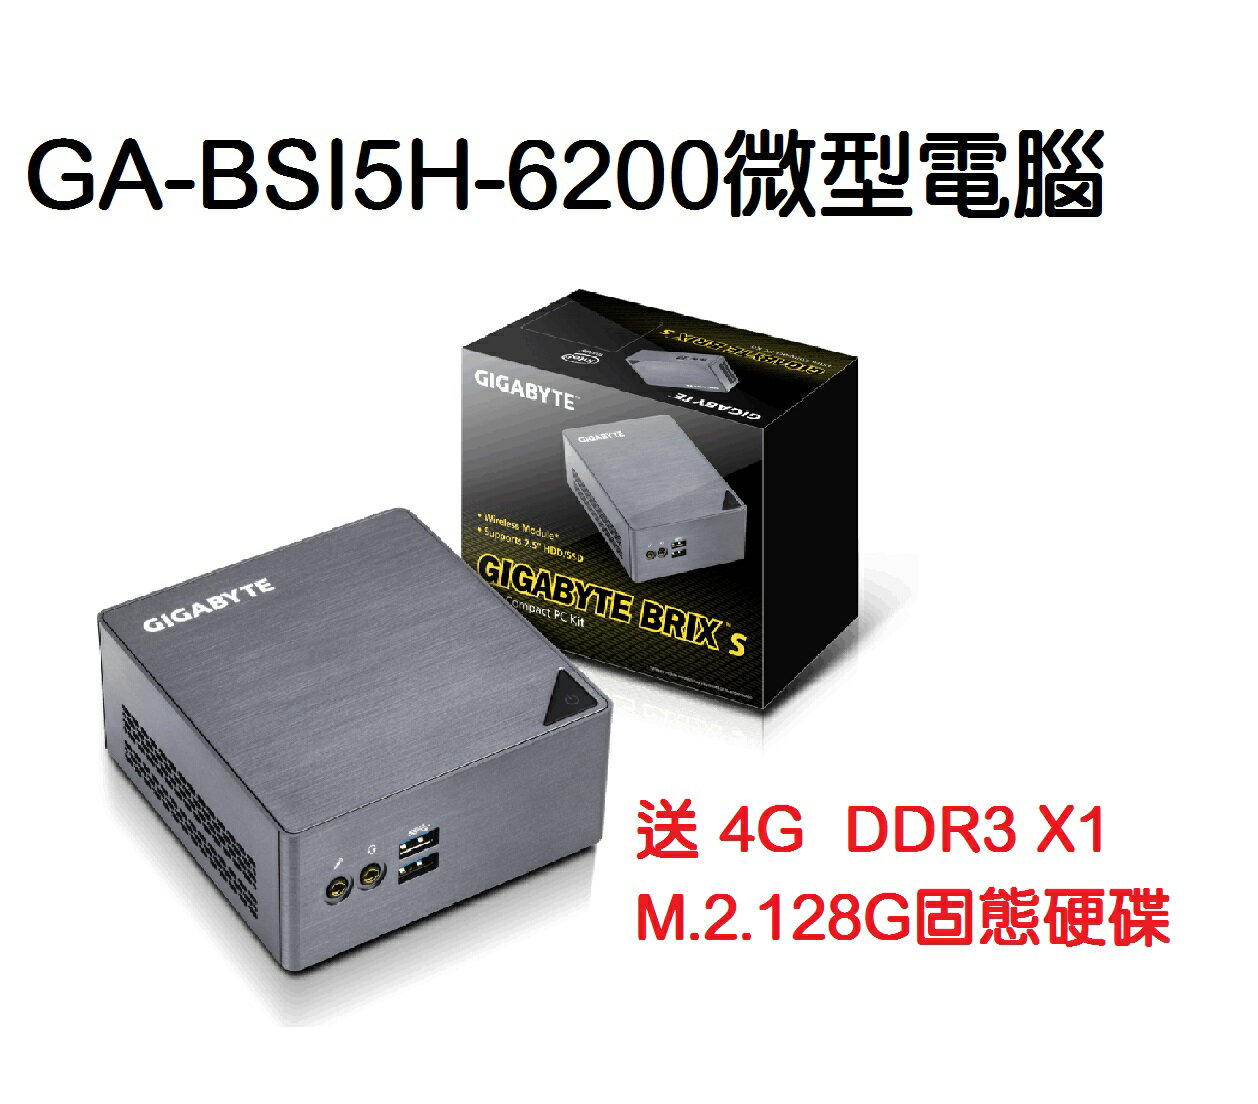 技嘉GB-BSI5H-6200 迷你電腦